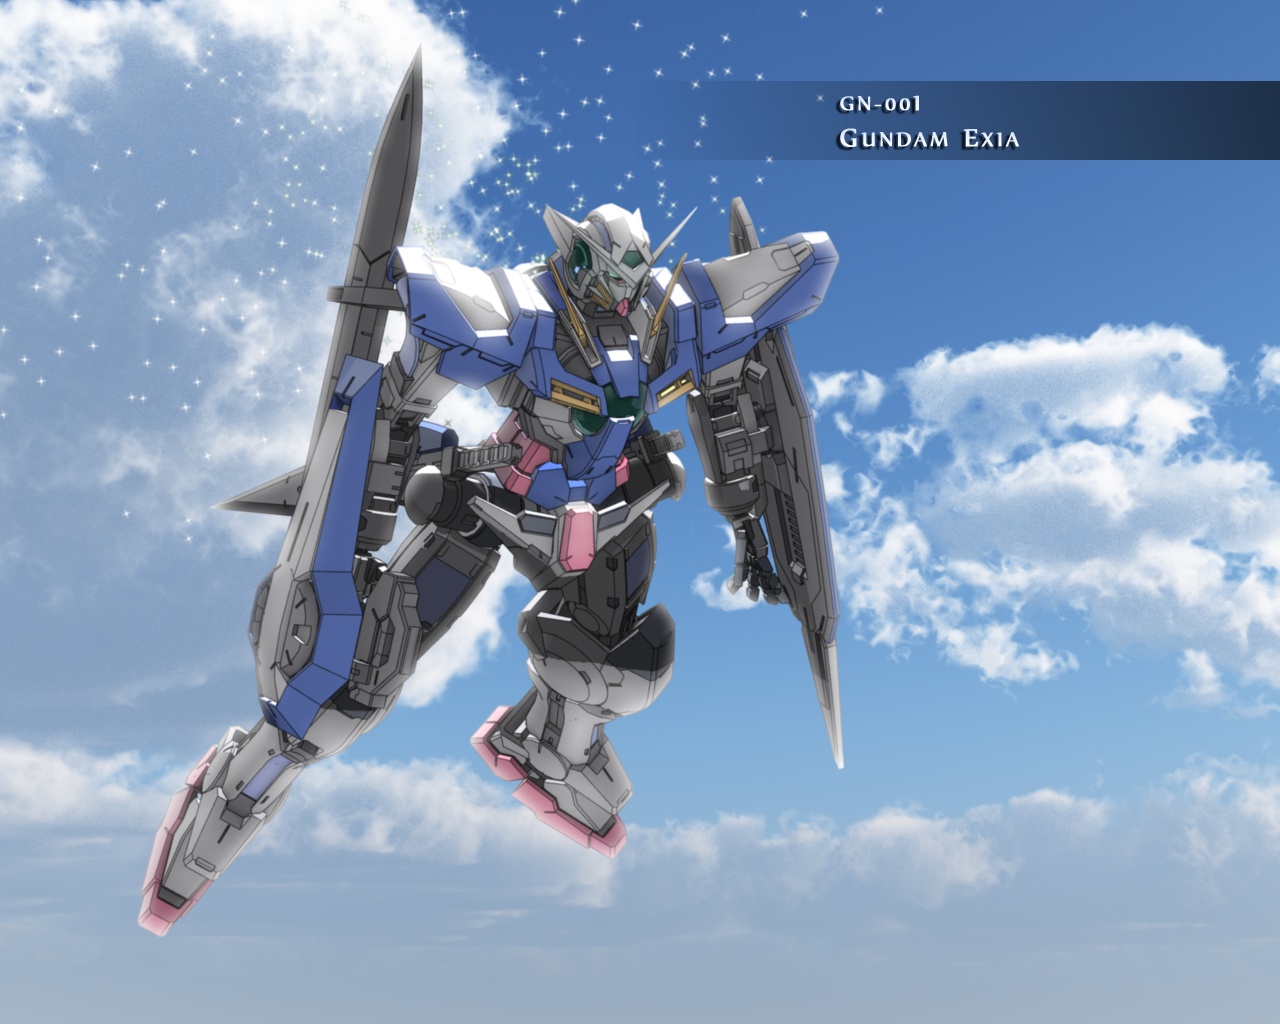 Prime Walls Gundam 00 Wallpapers